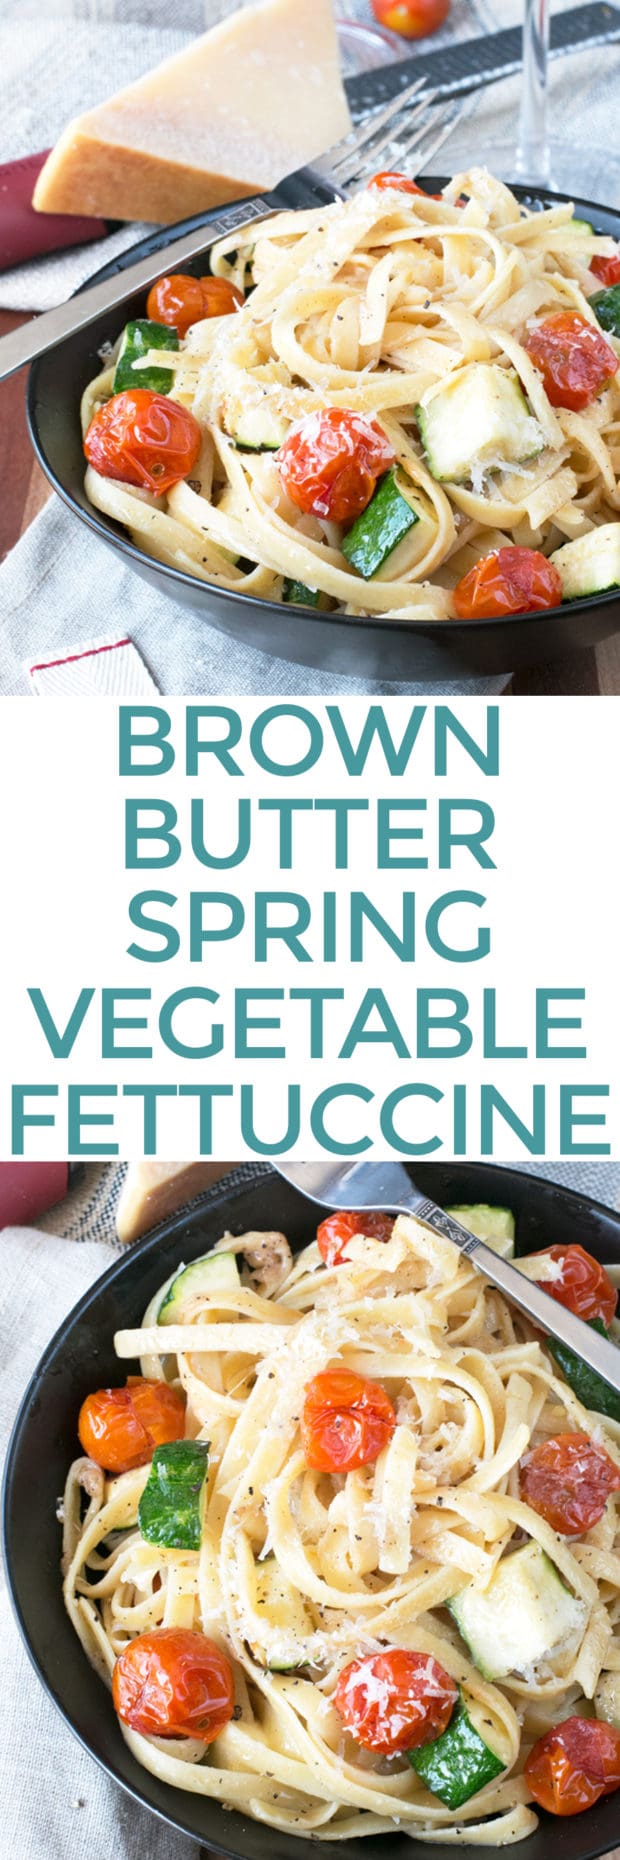 Brown Butter Spring Vegetable Fettuccine | cakenknife.com #pasta #dinner #healthy